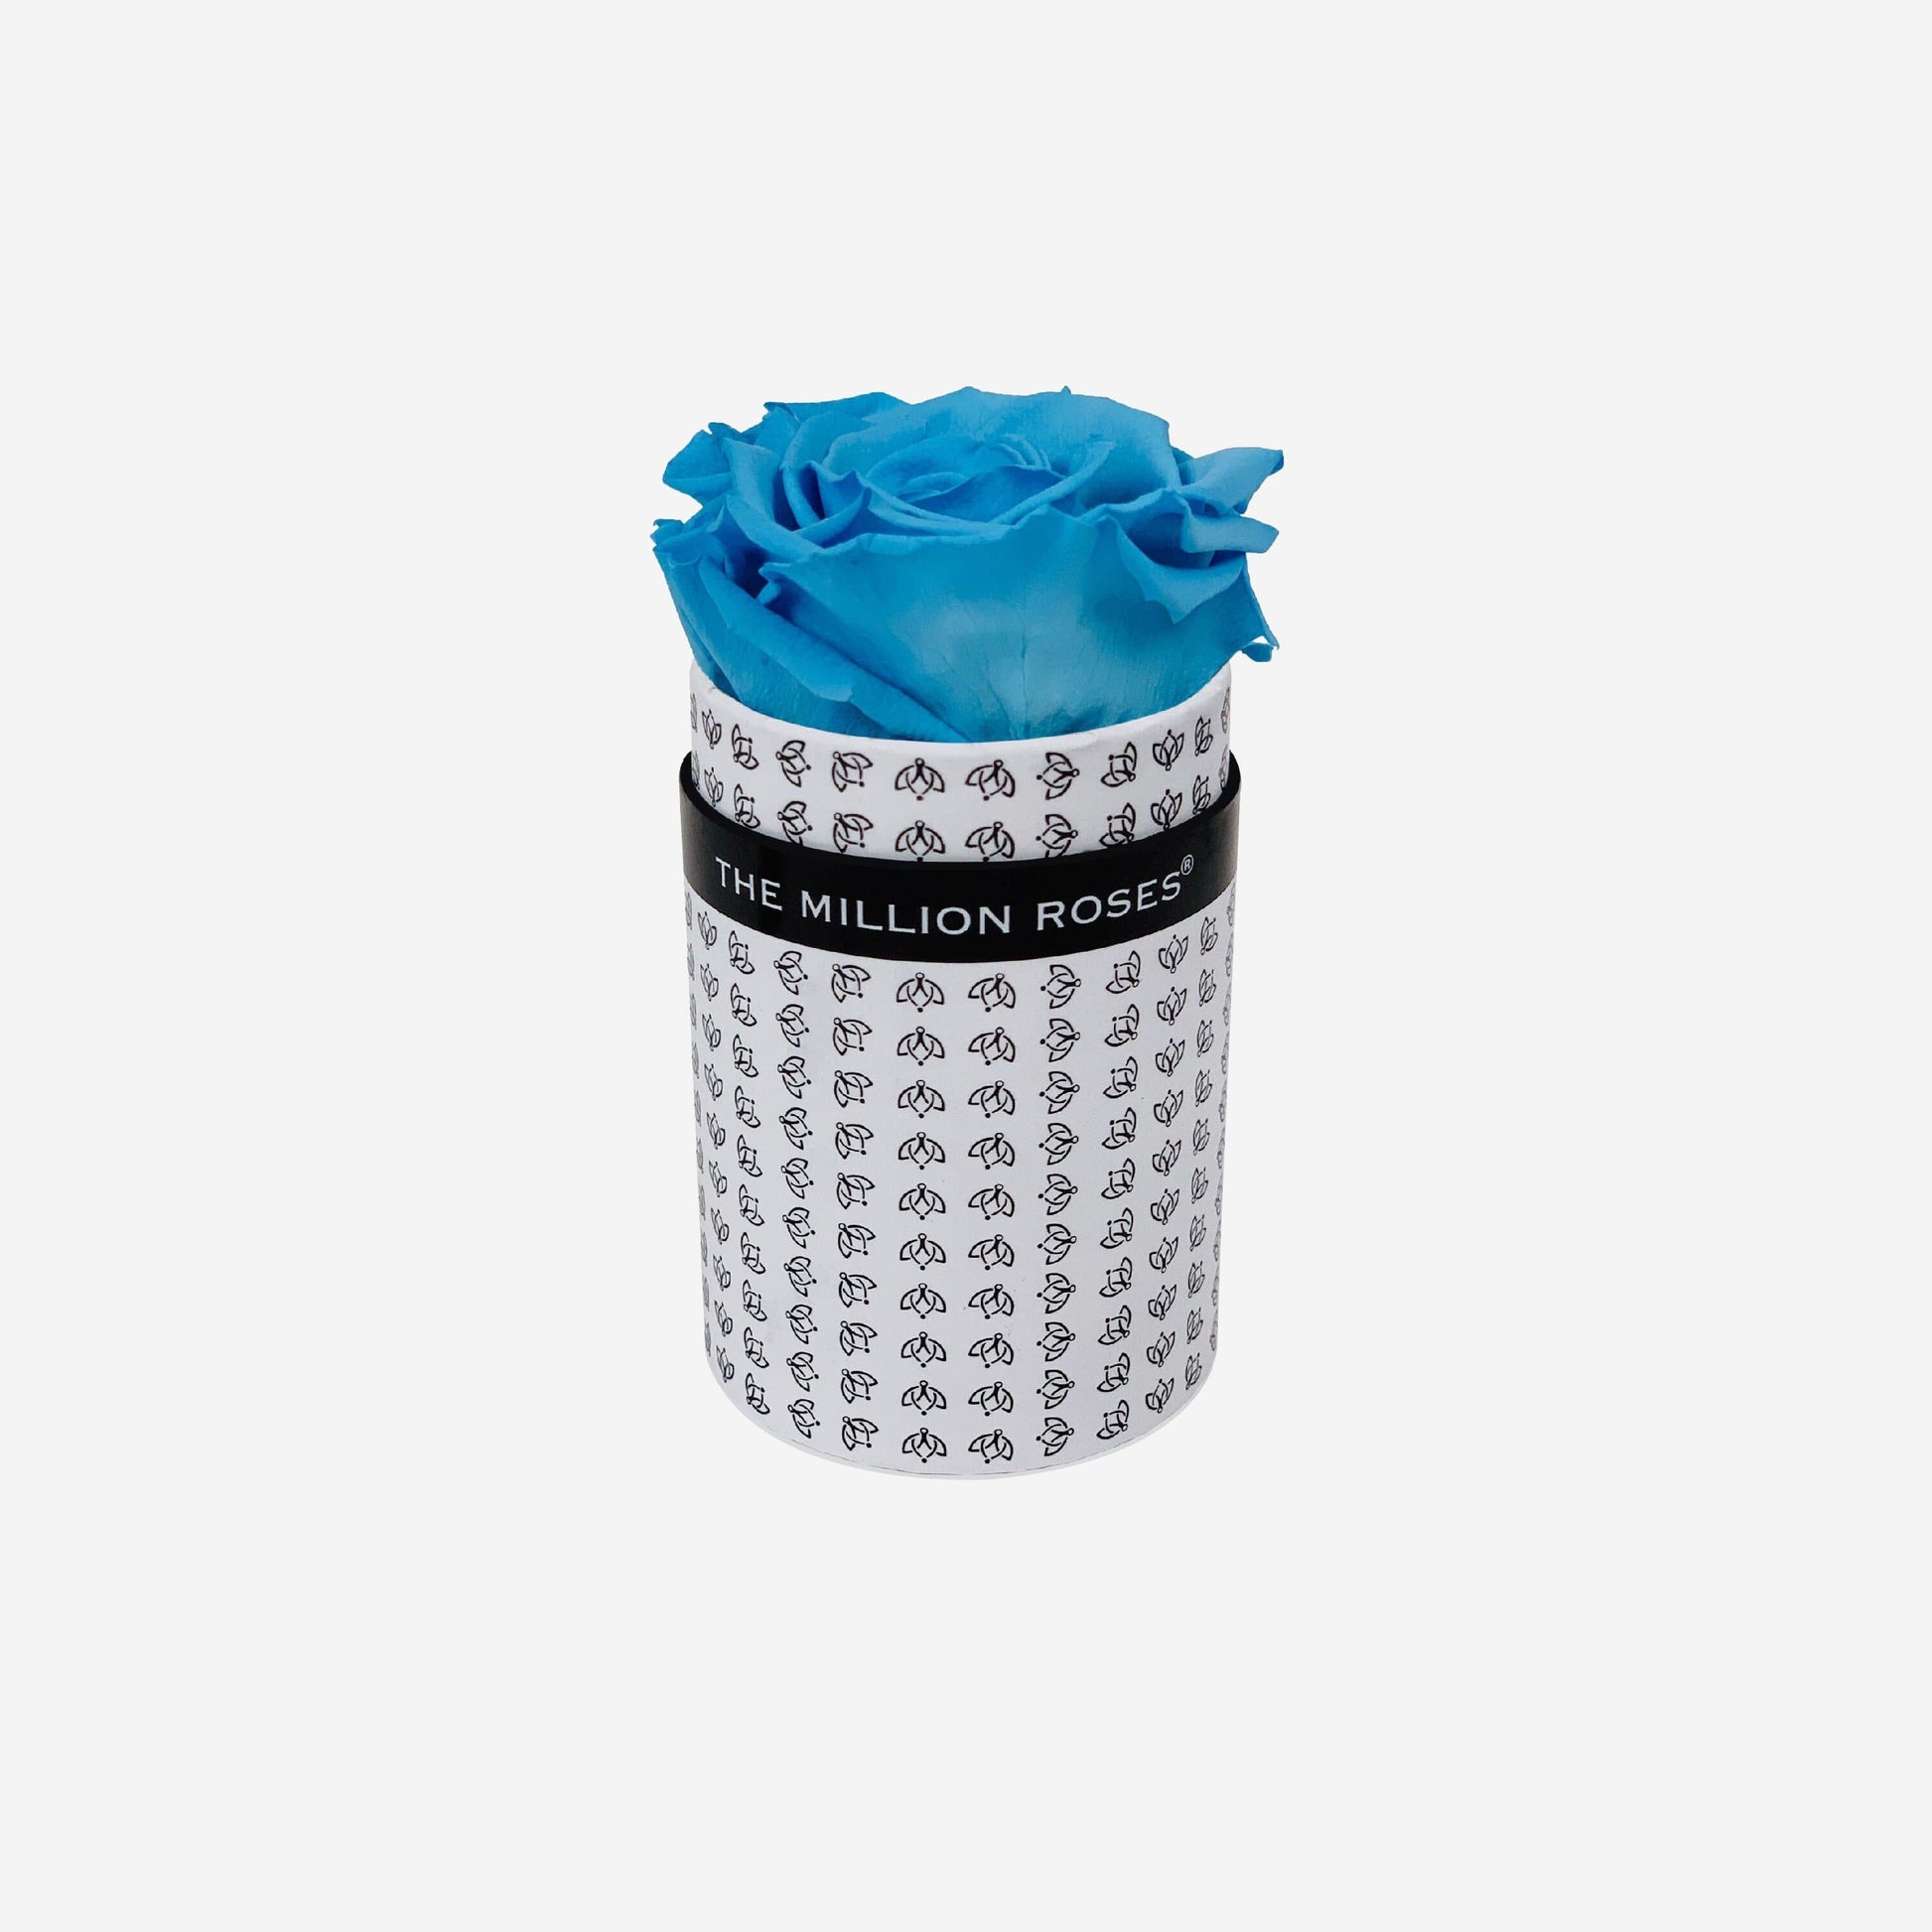 Single White Monogram Box | Light Blue Rose - The Million Roses